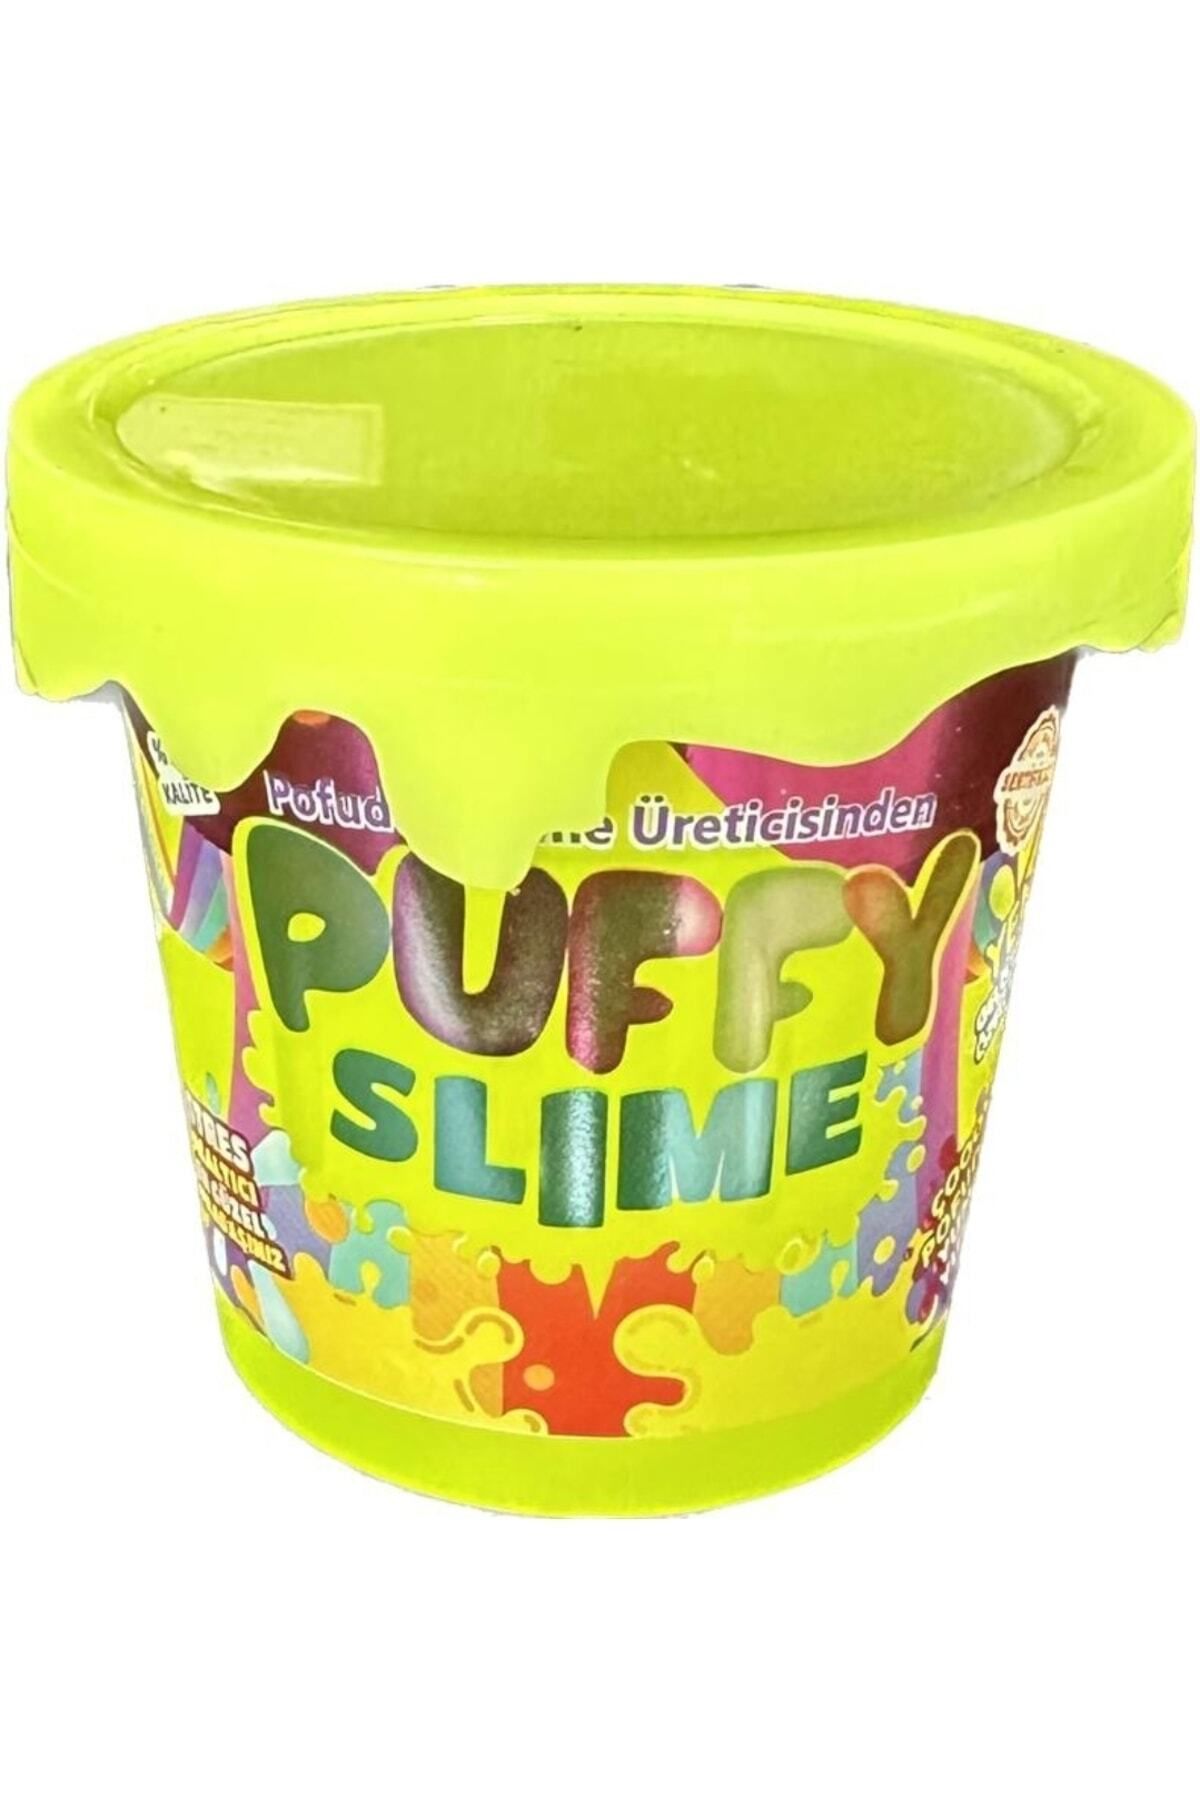 ümit toys Puffy Sarı Slime Yeni Trend Slime - 1 Adet Hazır Slime 4 Farklı Renkler 120 gr Slaym Pop Tube